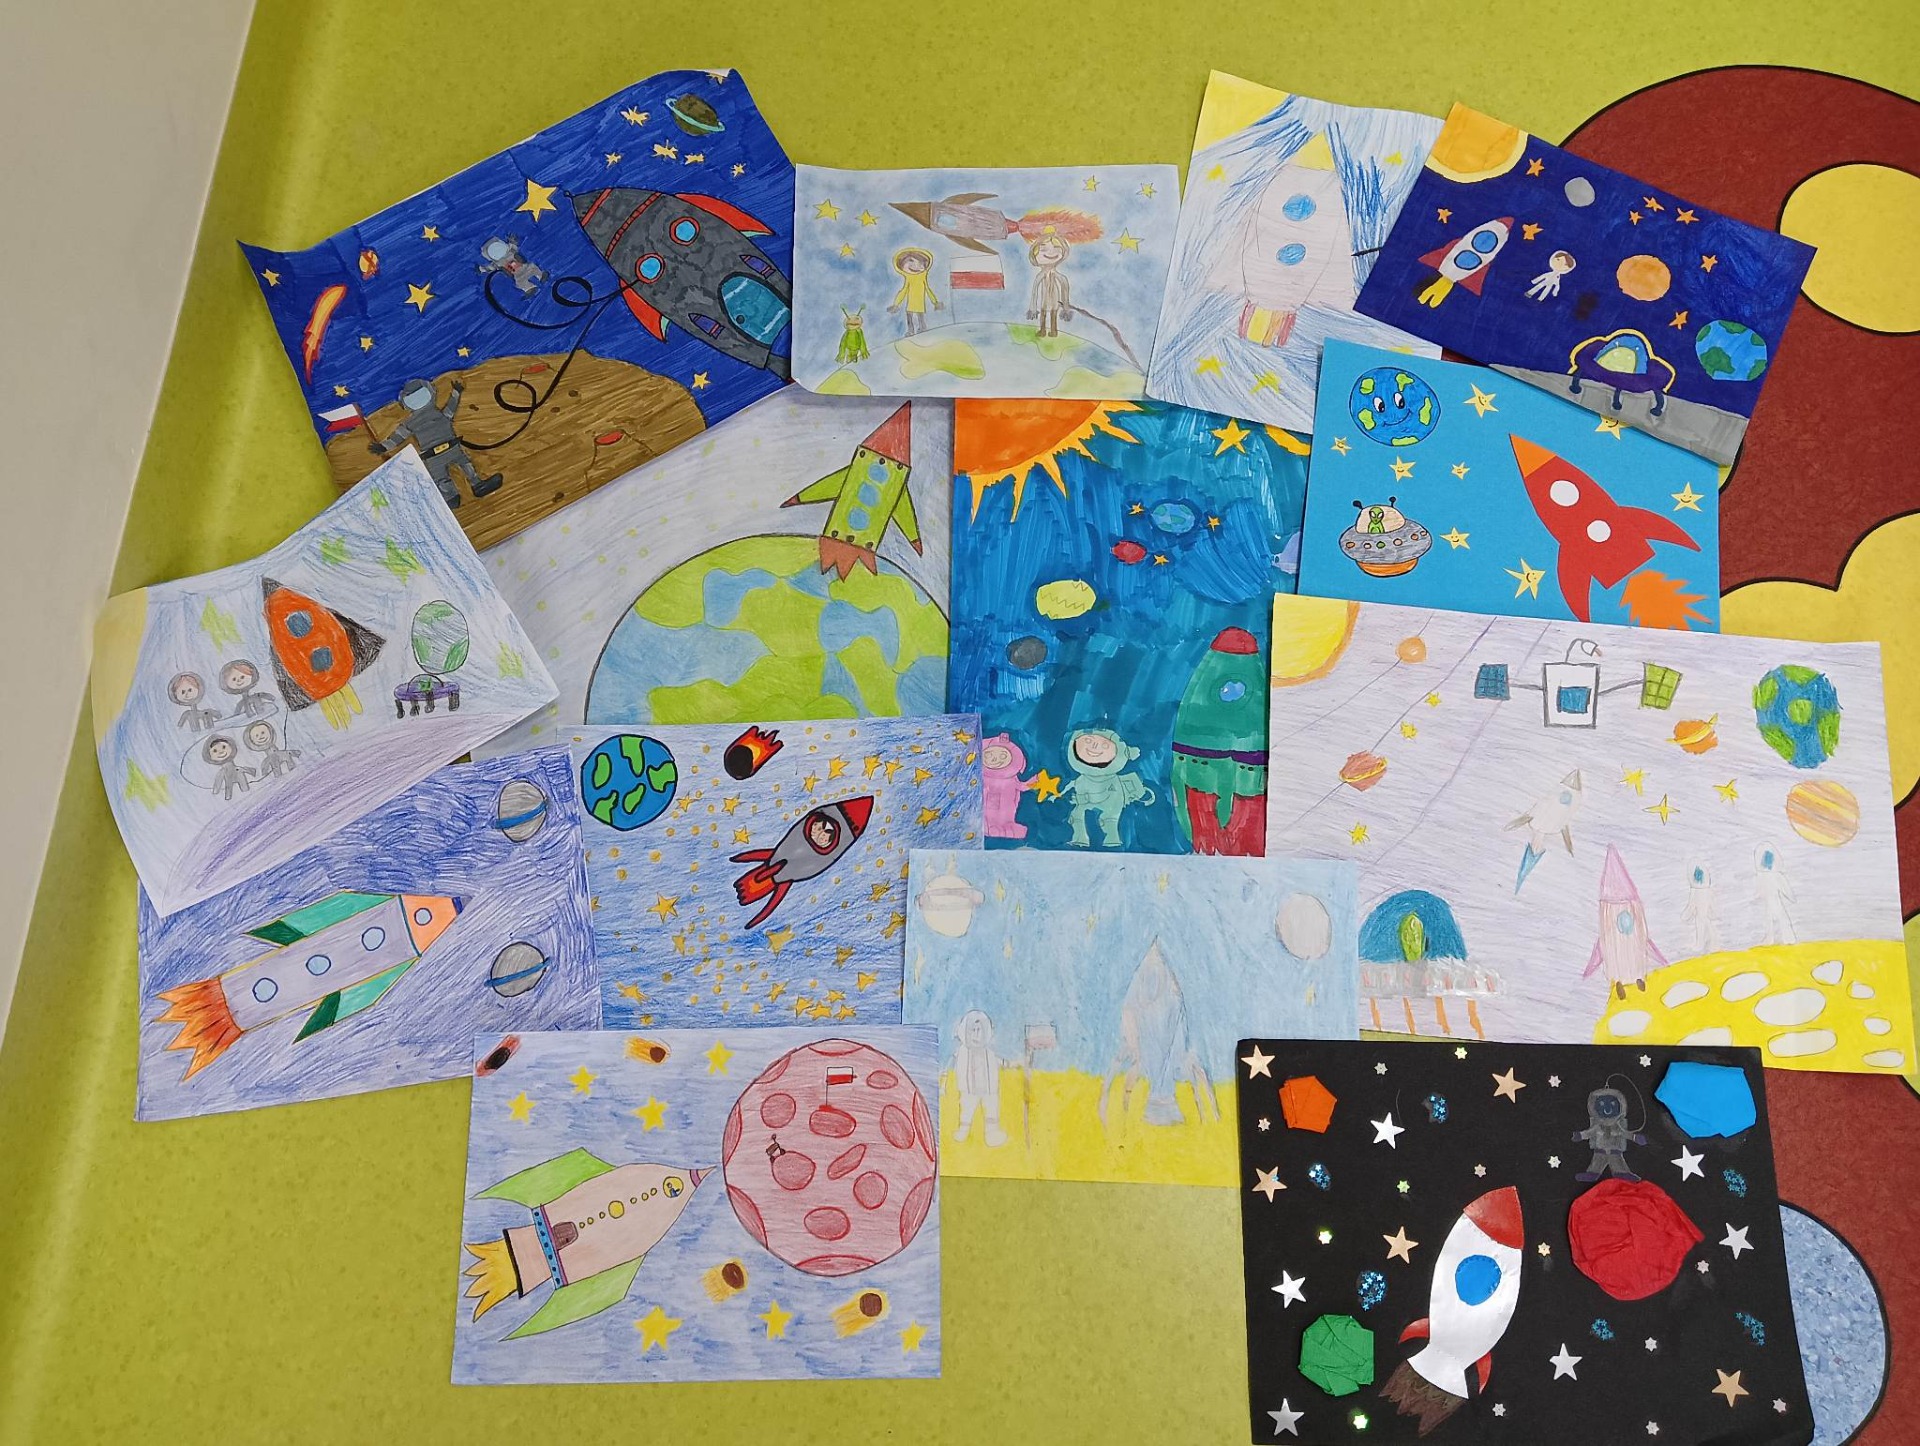 Prace plastyczne "Moja kosmiczna przygoda" wykonane przez uczniów i rodziców